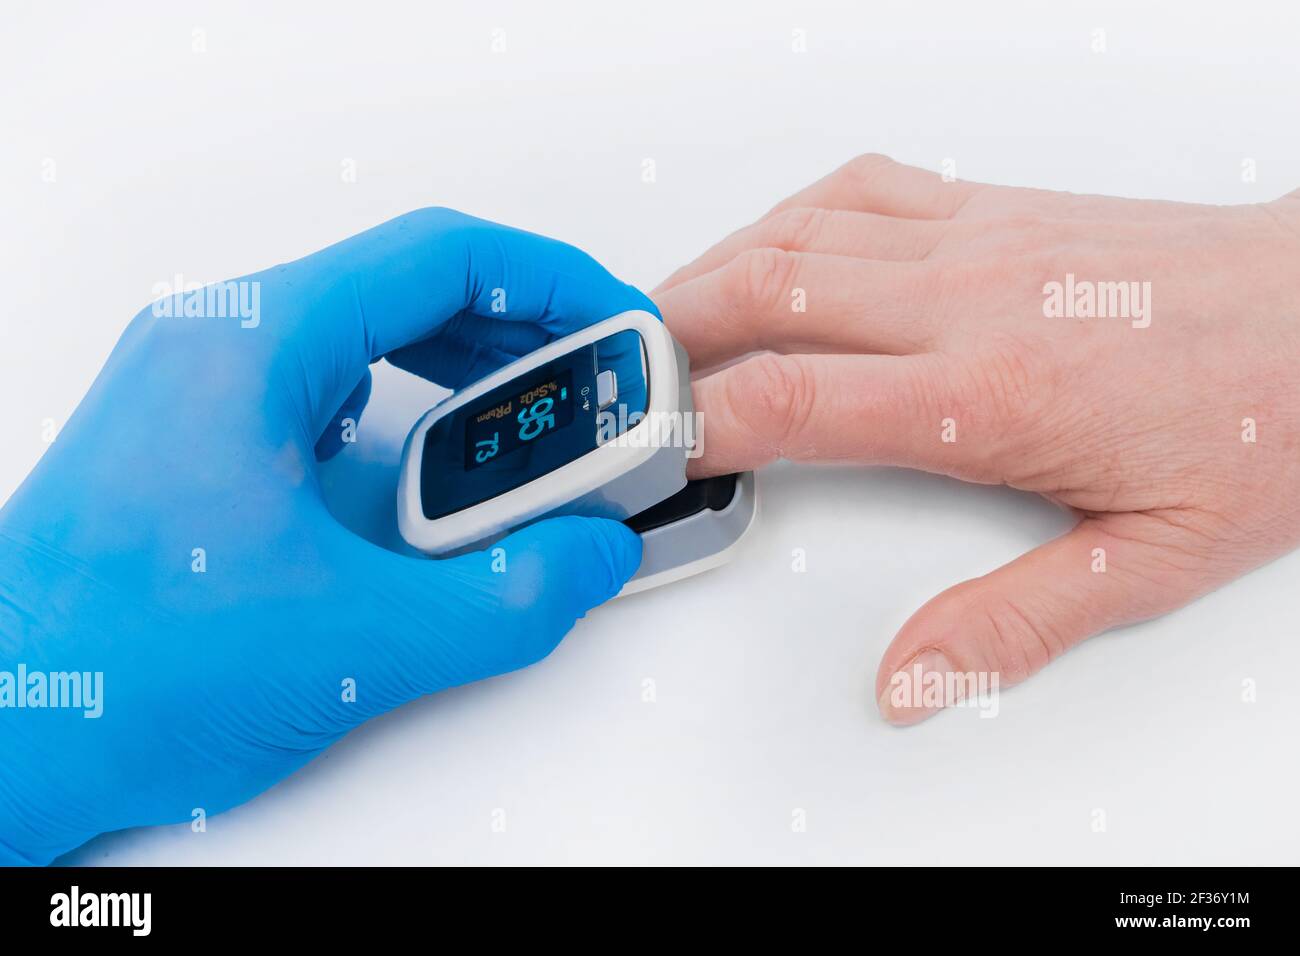 Die Hand des Arztes in einem medizinischen Latexhandschuh hält ein Gerät,  um Sauerstoff im Blut zu messen, Pulsexymeter mit dem Finger einer älteren  Frau auf einem weißen Stockfotografie - Alamy